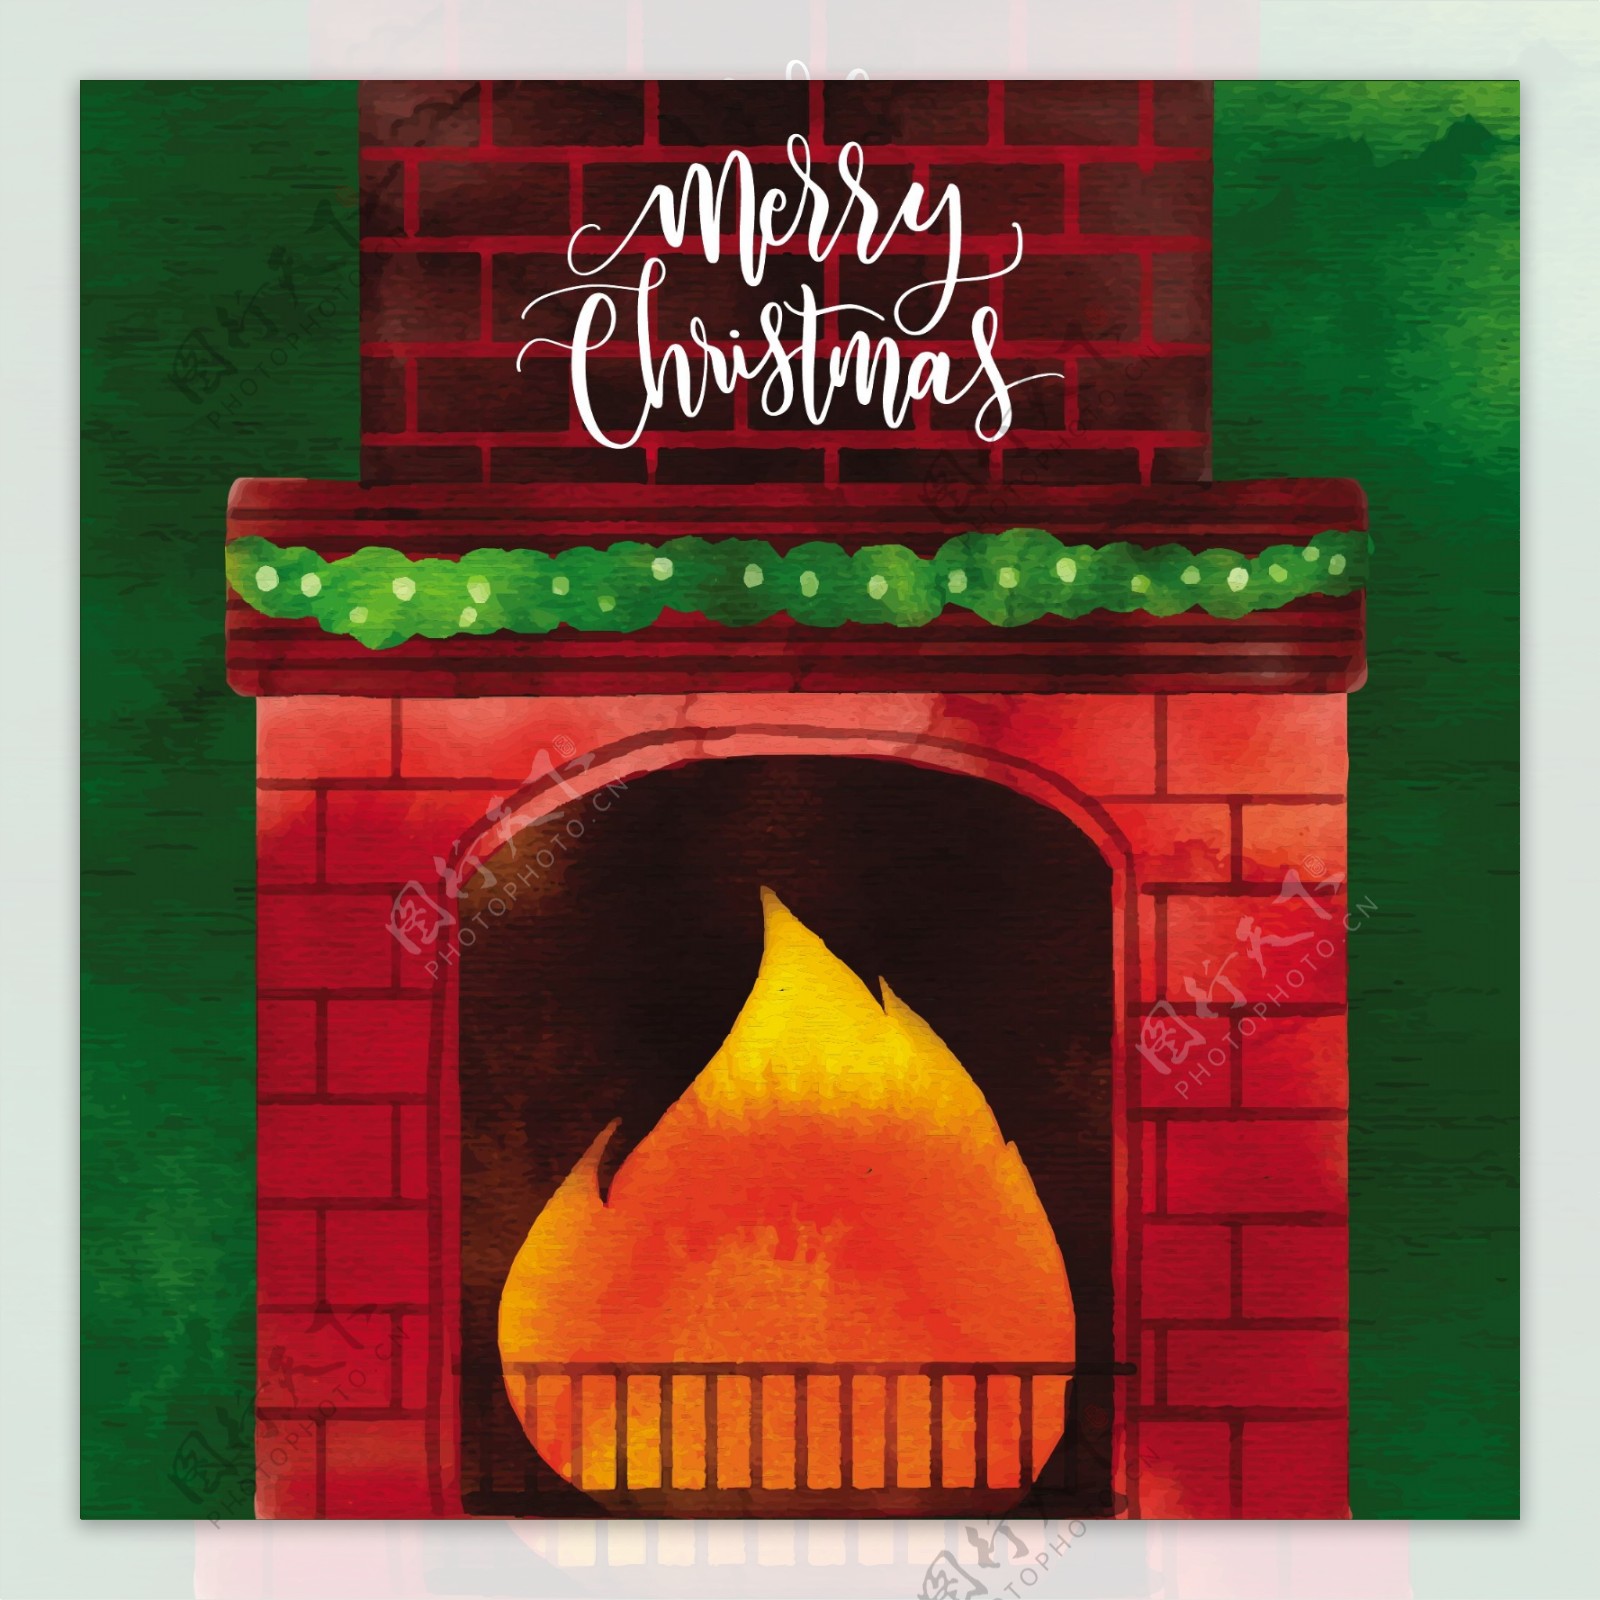 壁炉与壁炉的圣诞背景